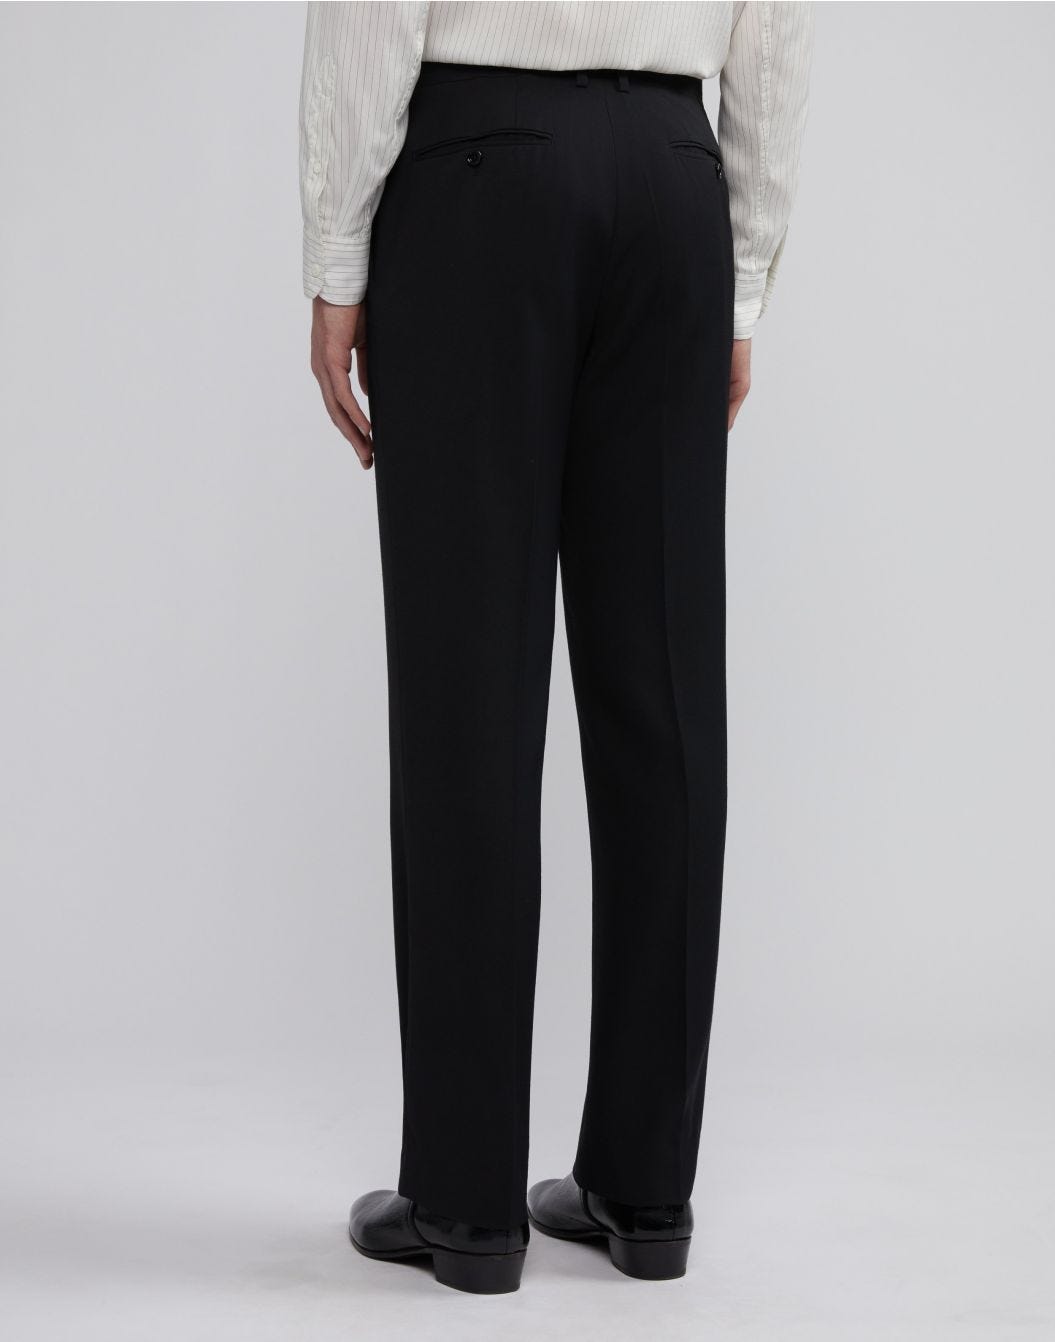 Pantalone nero Attitude in viscosa di lana e seta